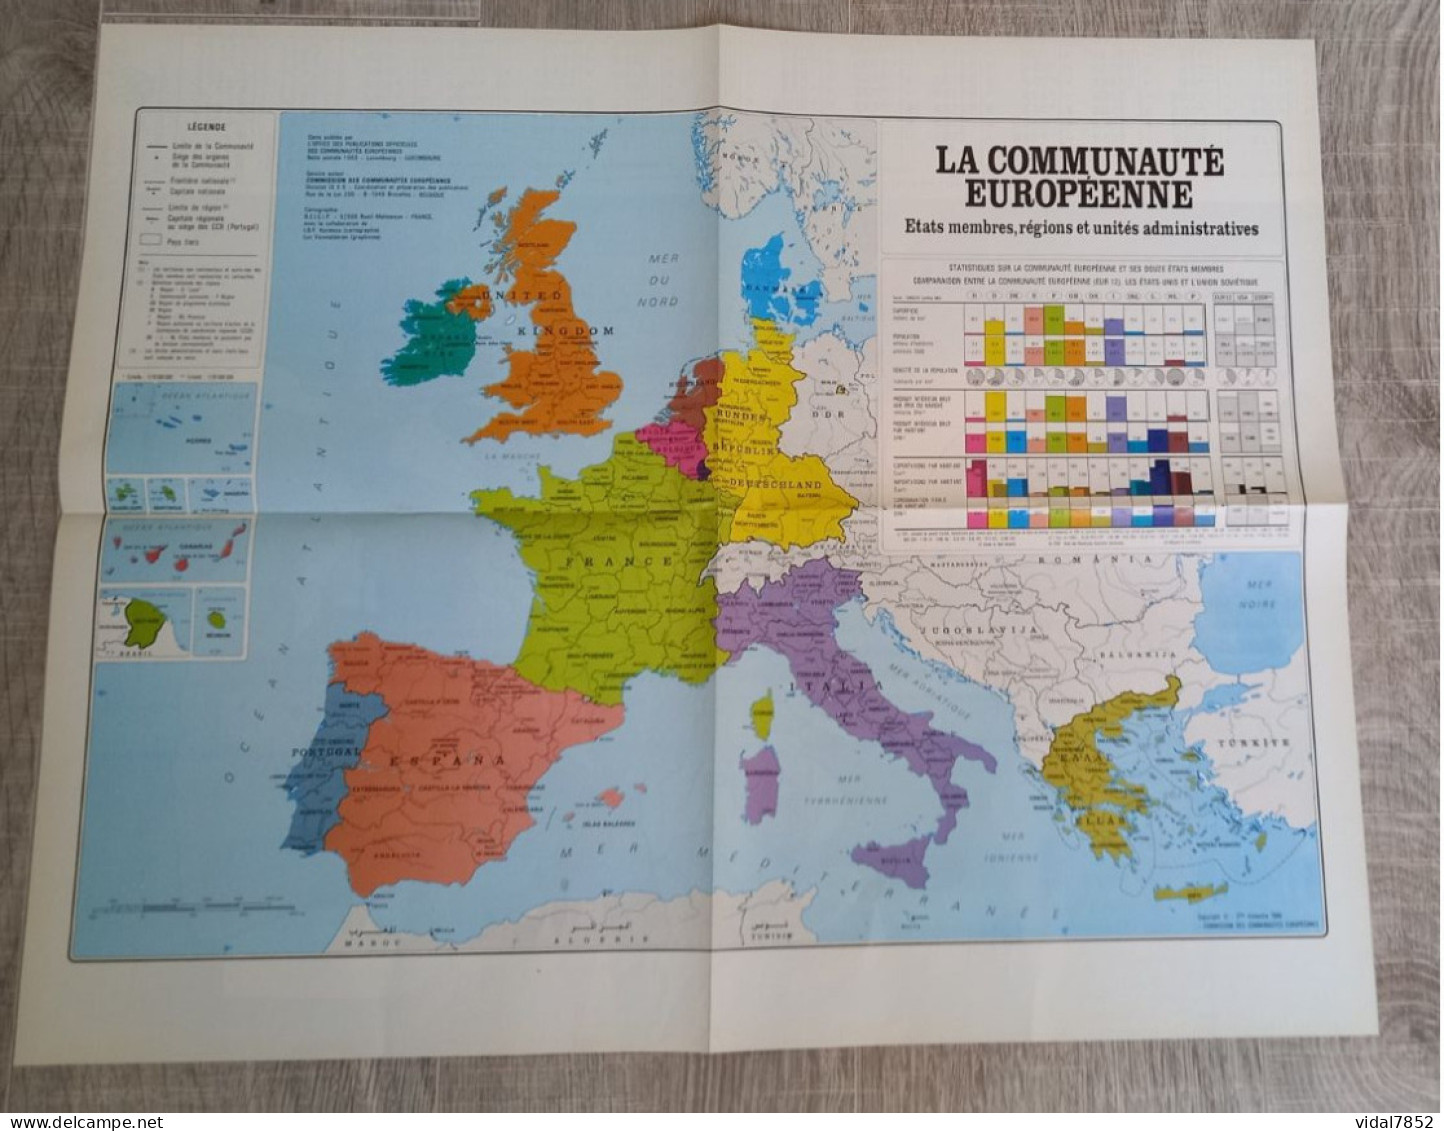 Calendrier-Almanach Des P.T.T 1991-Poster Intérieur Communauté Européenne--Tom Jerry Département AIN-01-Référence 414 - Grossformat : 1991-00